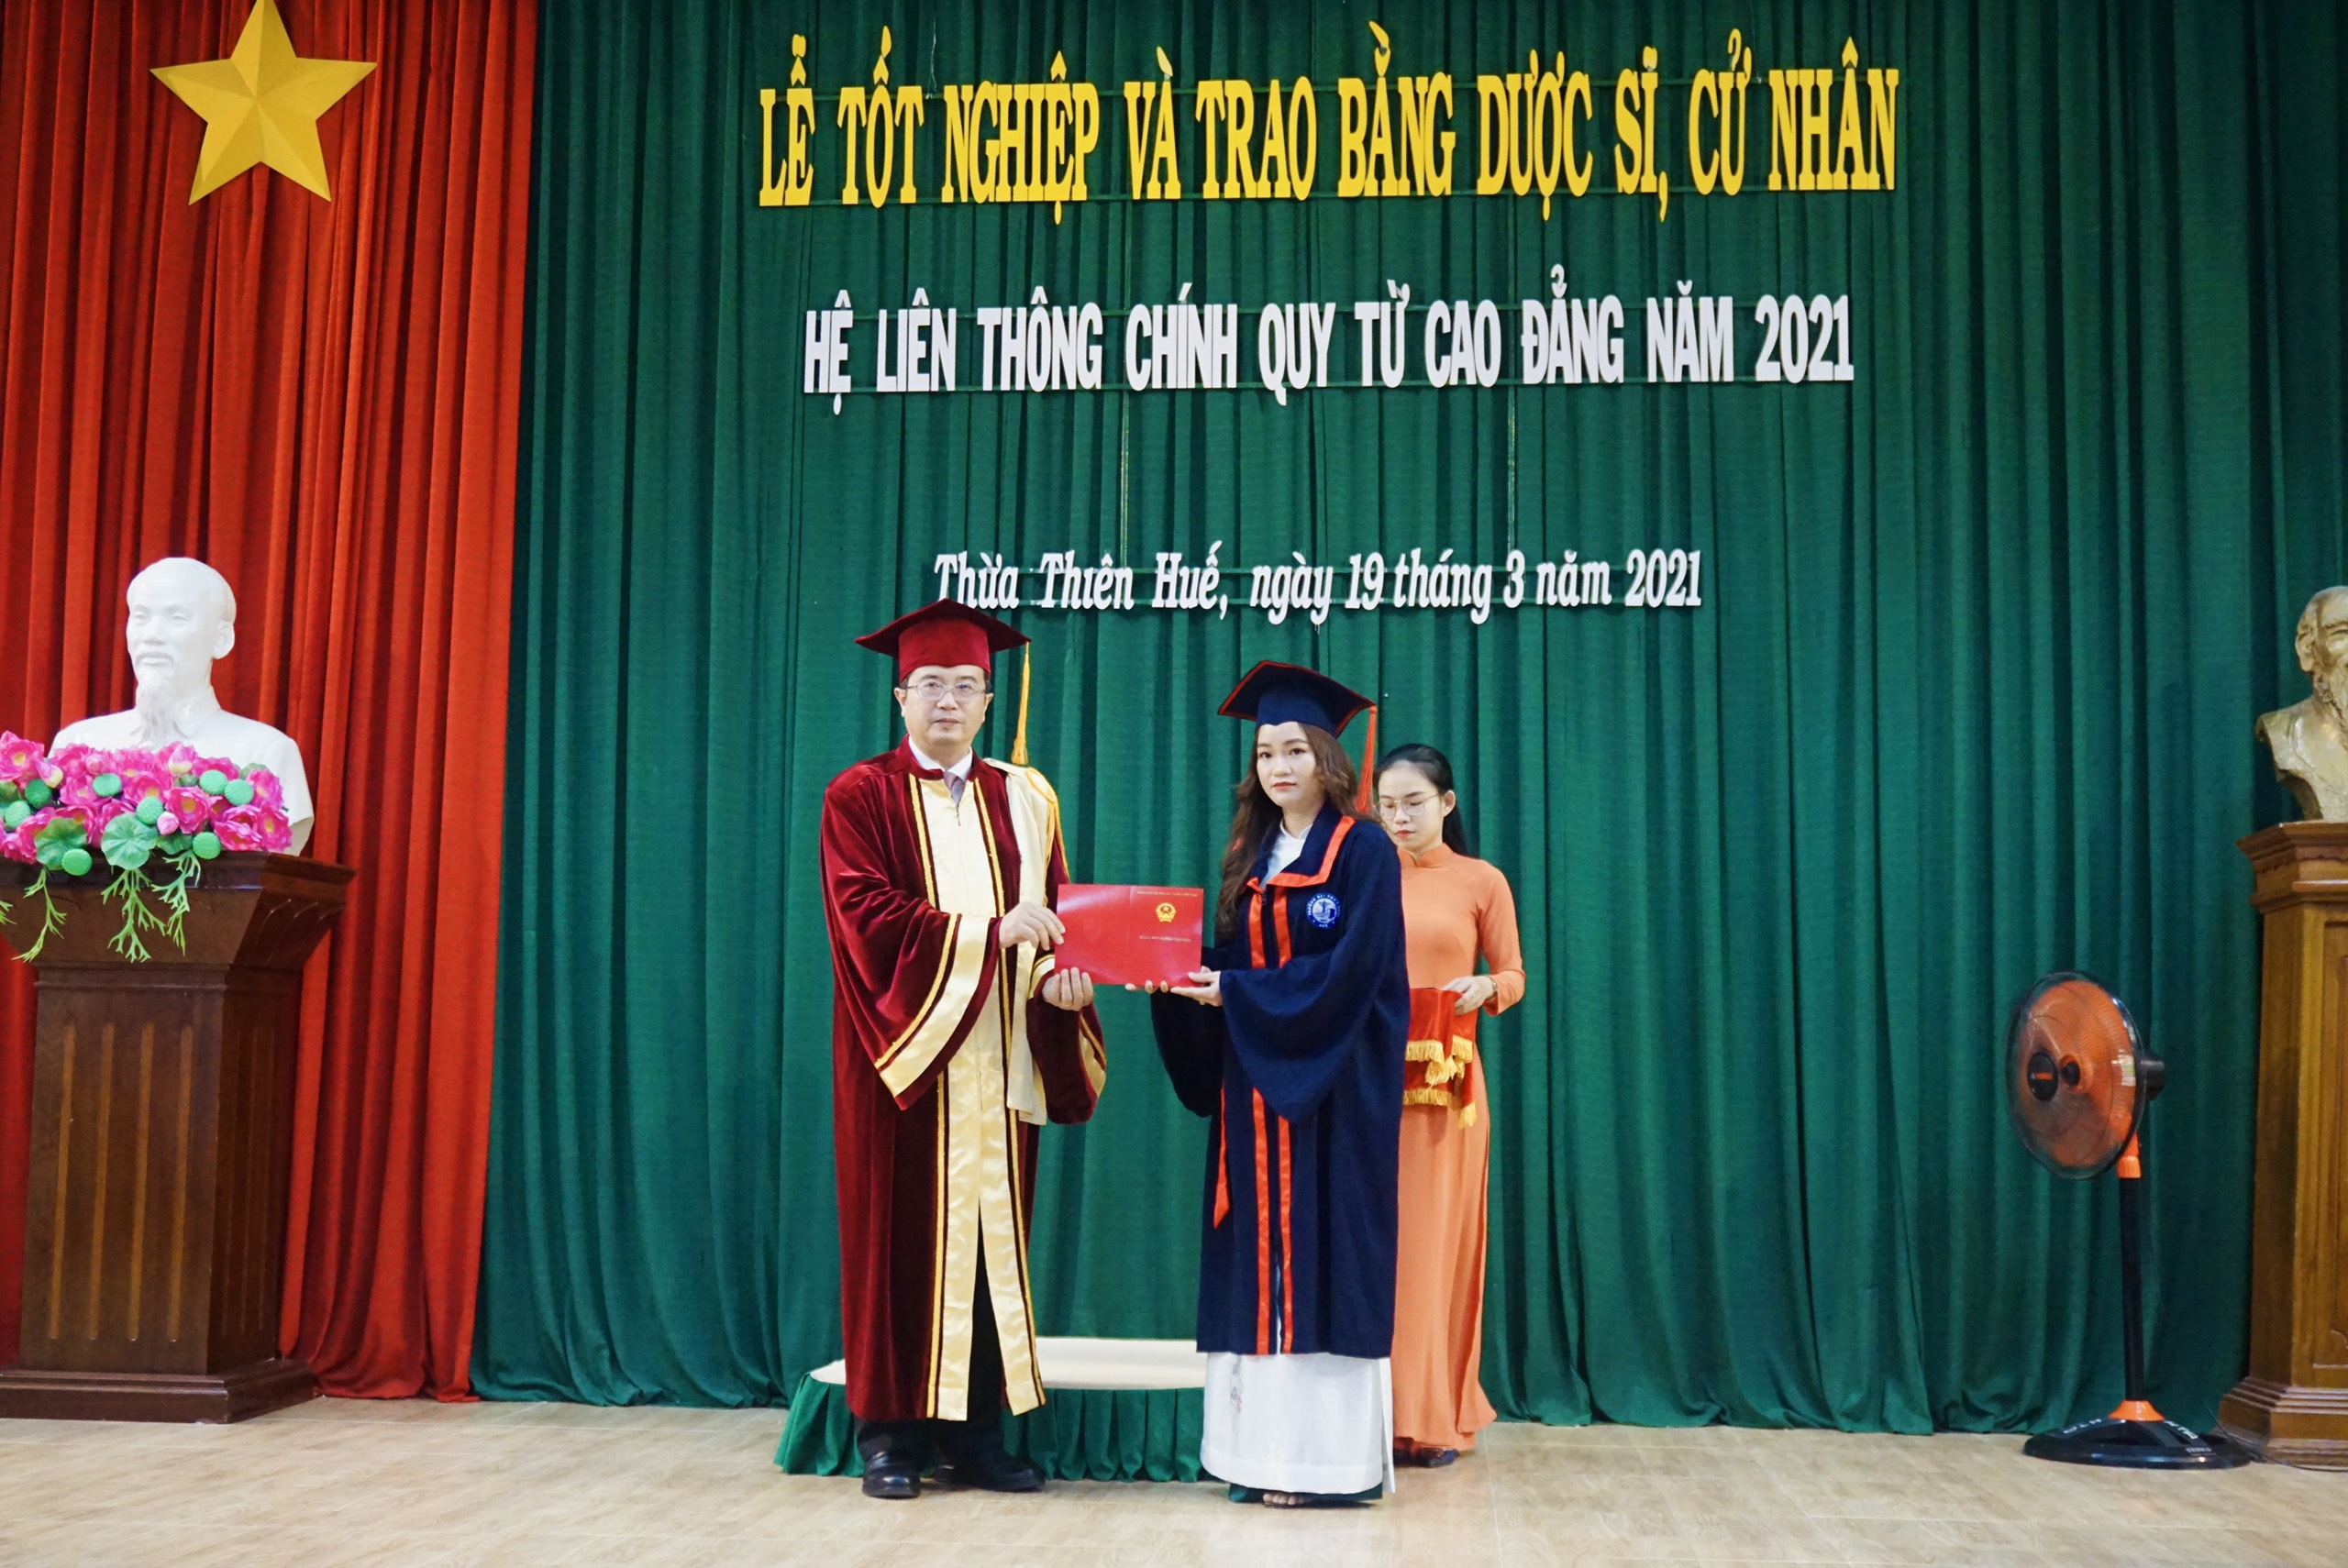 Lễ tốt nghiệp và trao bằng cho sinh viên hệ liên thông chính quy từ cao đẳng tốt nghiệp năm học 2020-2021